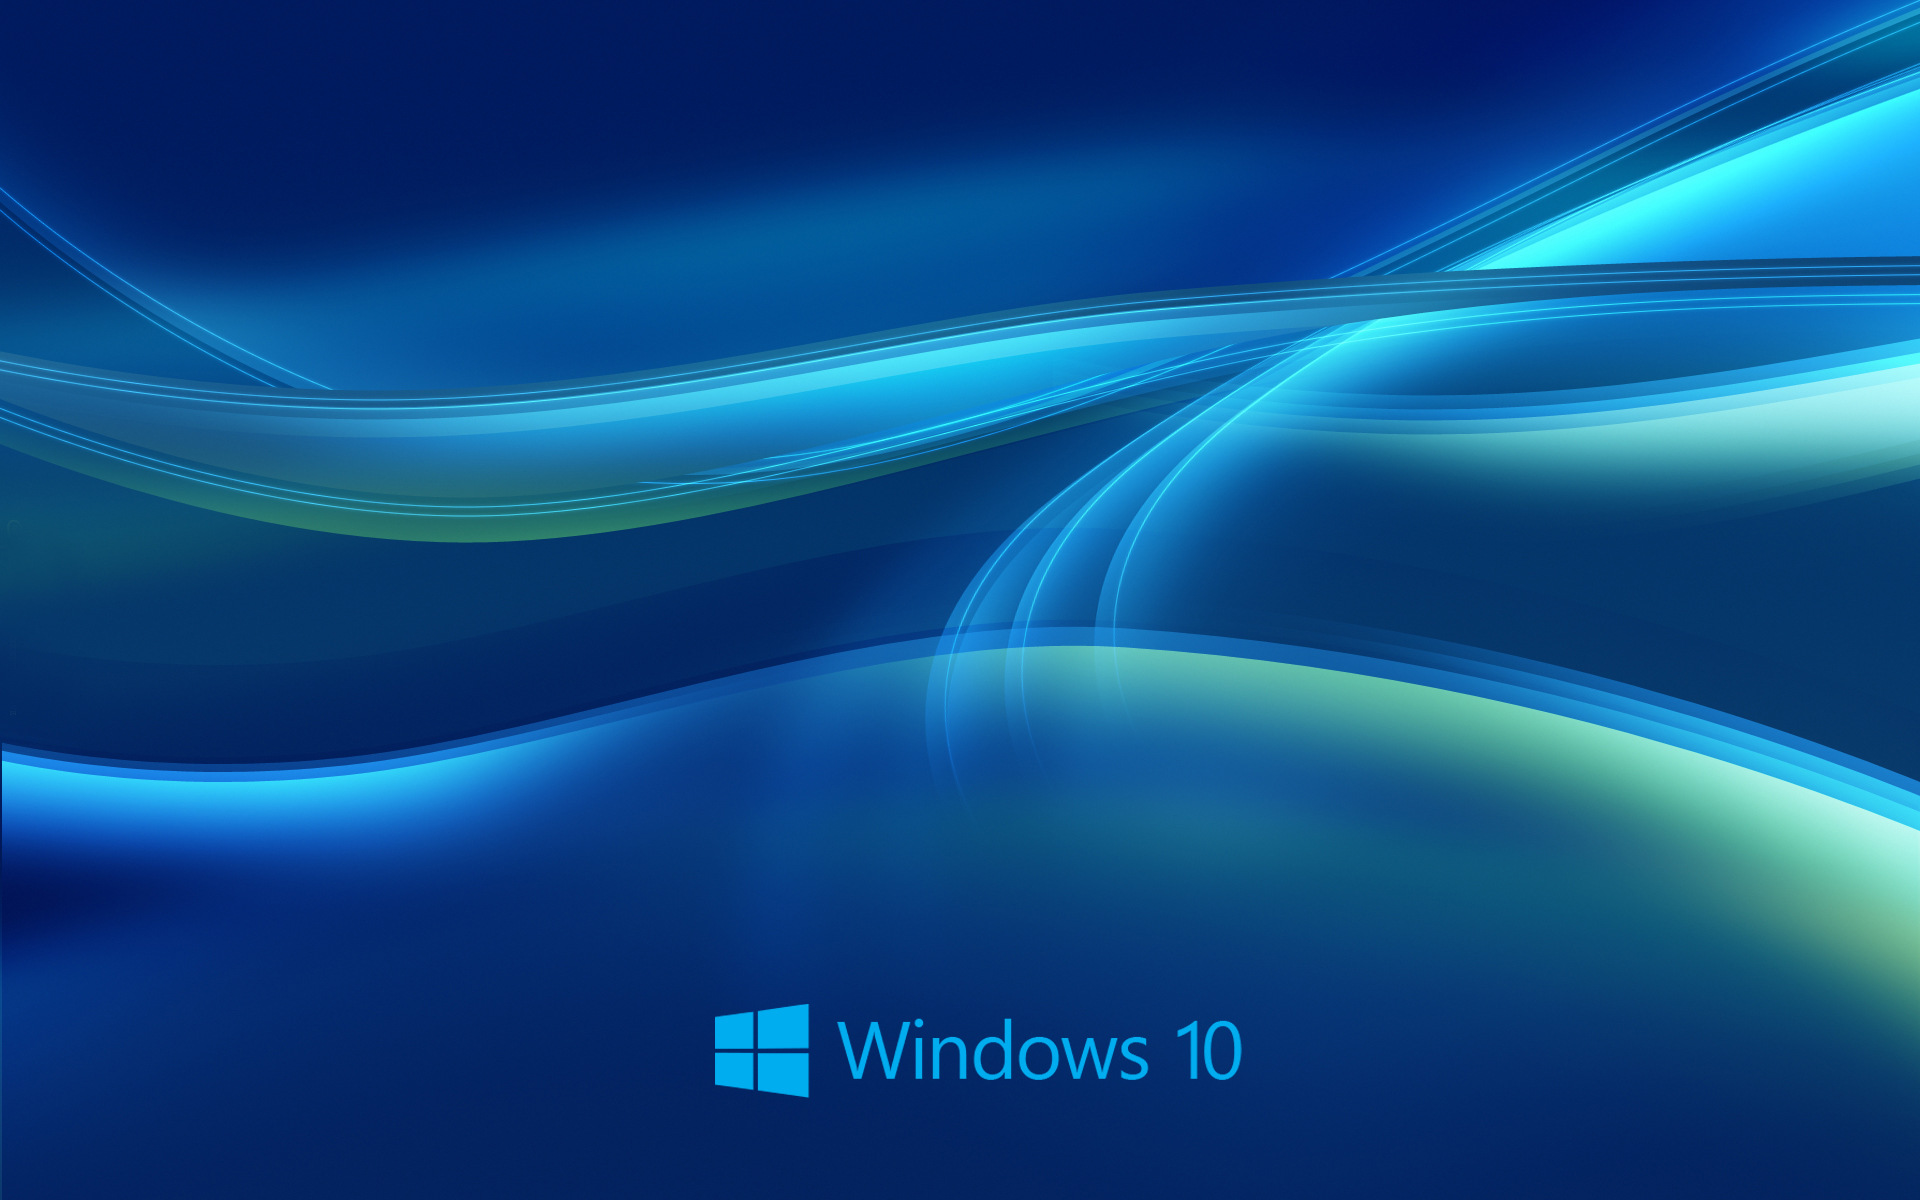 windows 10 background download